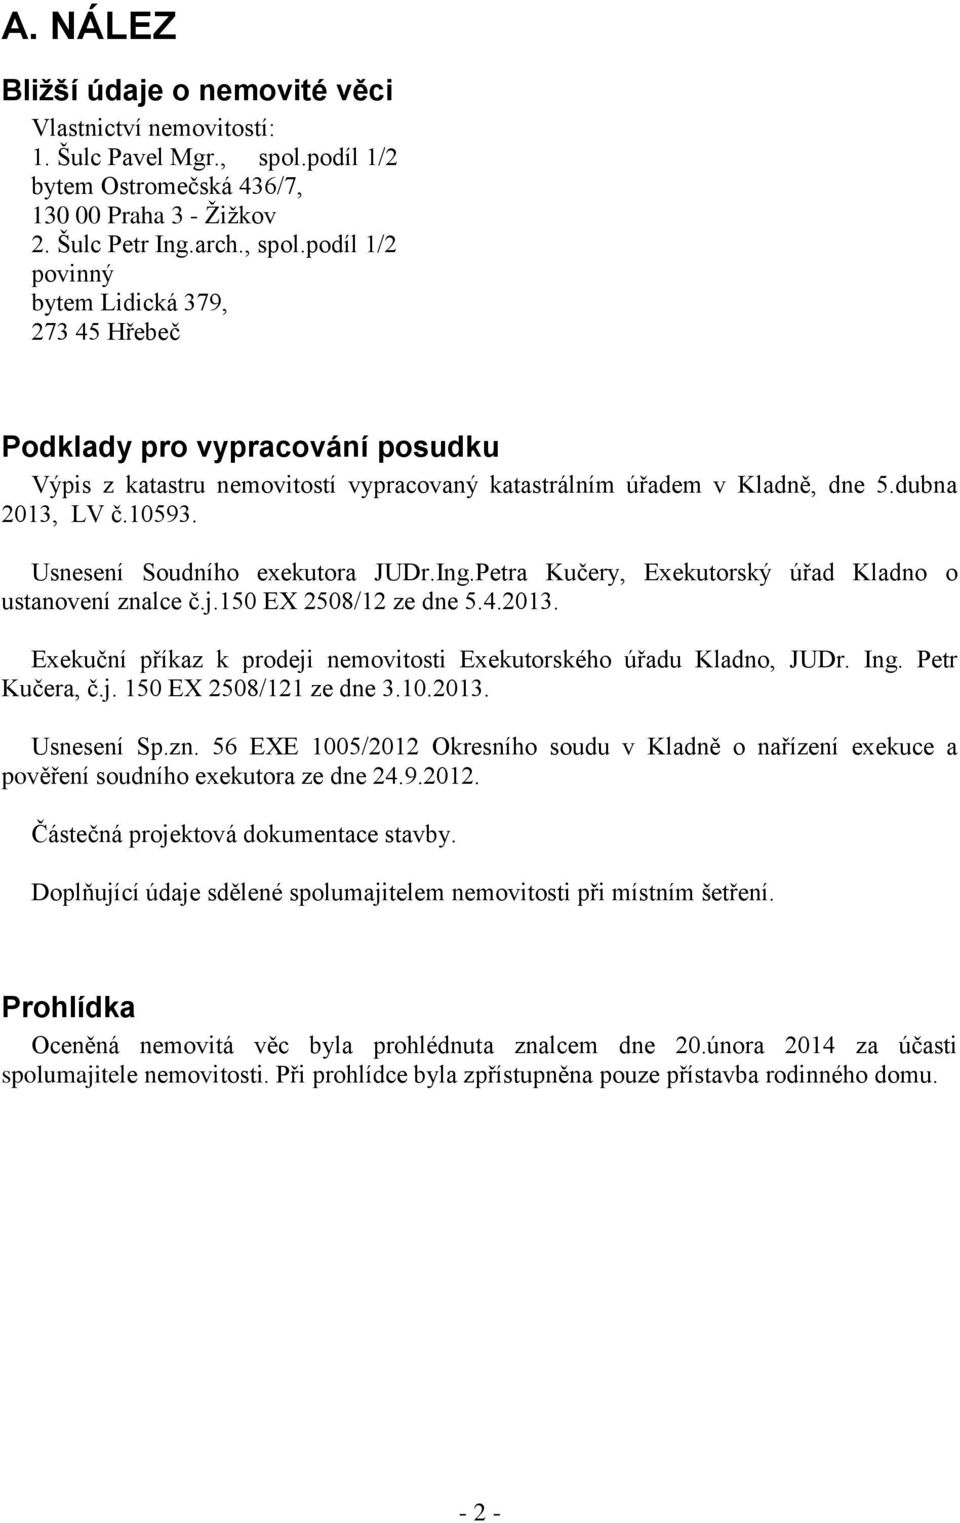 podíl 1/2 povinný bytem Lidická 379, 273 45 Hřebeč Podklady pro vypracování posudku Výpis z katastru nemovitostí vypracovaný katastrálním úřadem v Kladně, dne 5.dubna 2013, LV č.10593.